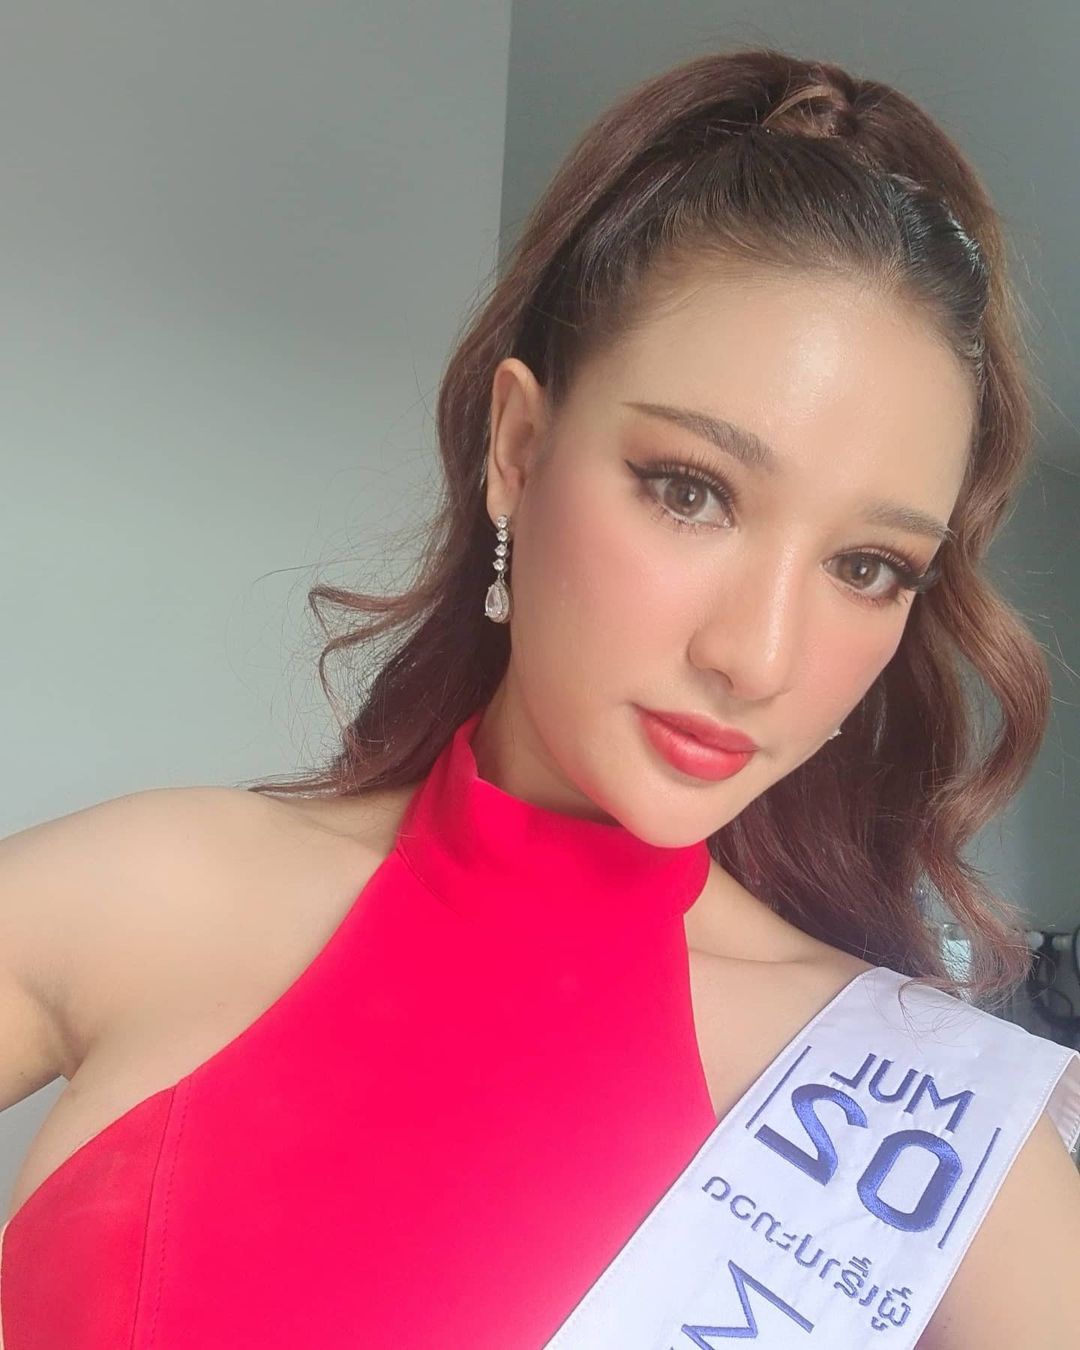 Tân Hoa hậu Hoàn vũ Lào 2021: 3 vòng quyến rũ, làm Giám đốc ở tuổi 26, biết nói tiếng Việt - Ảnh 9